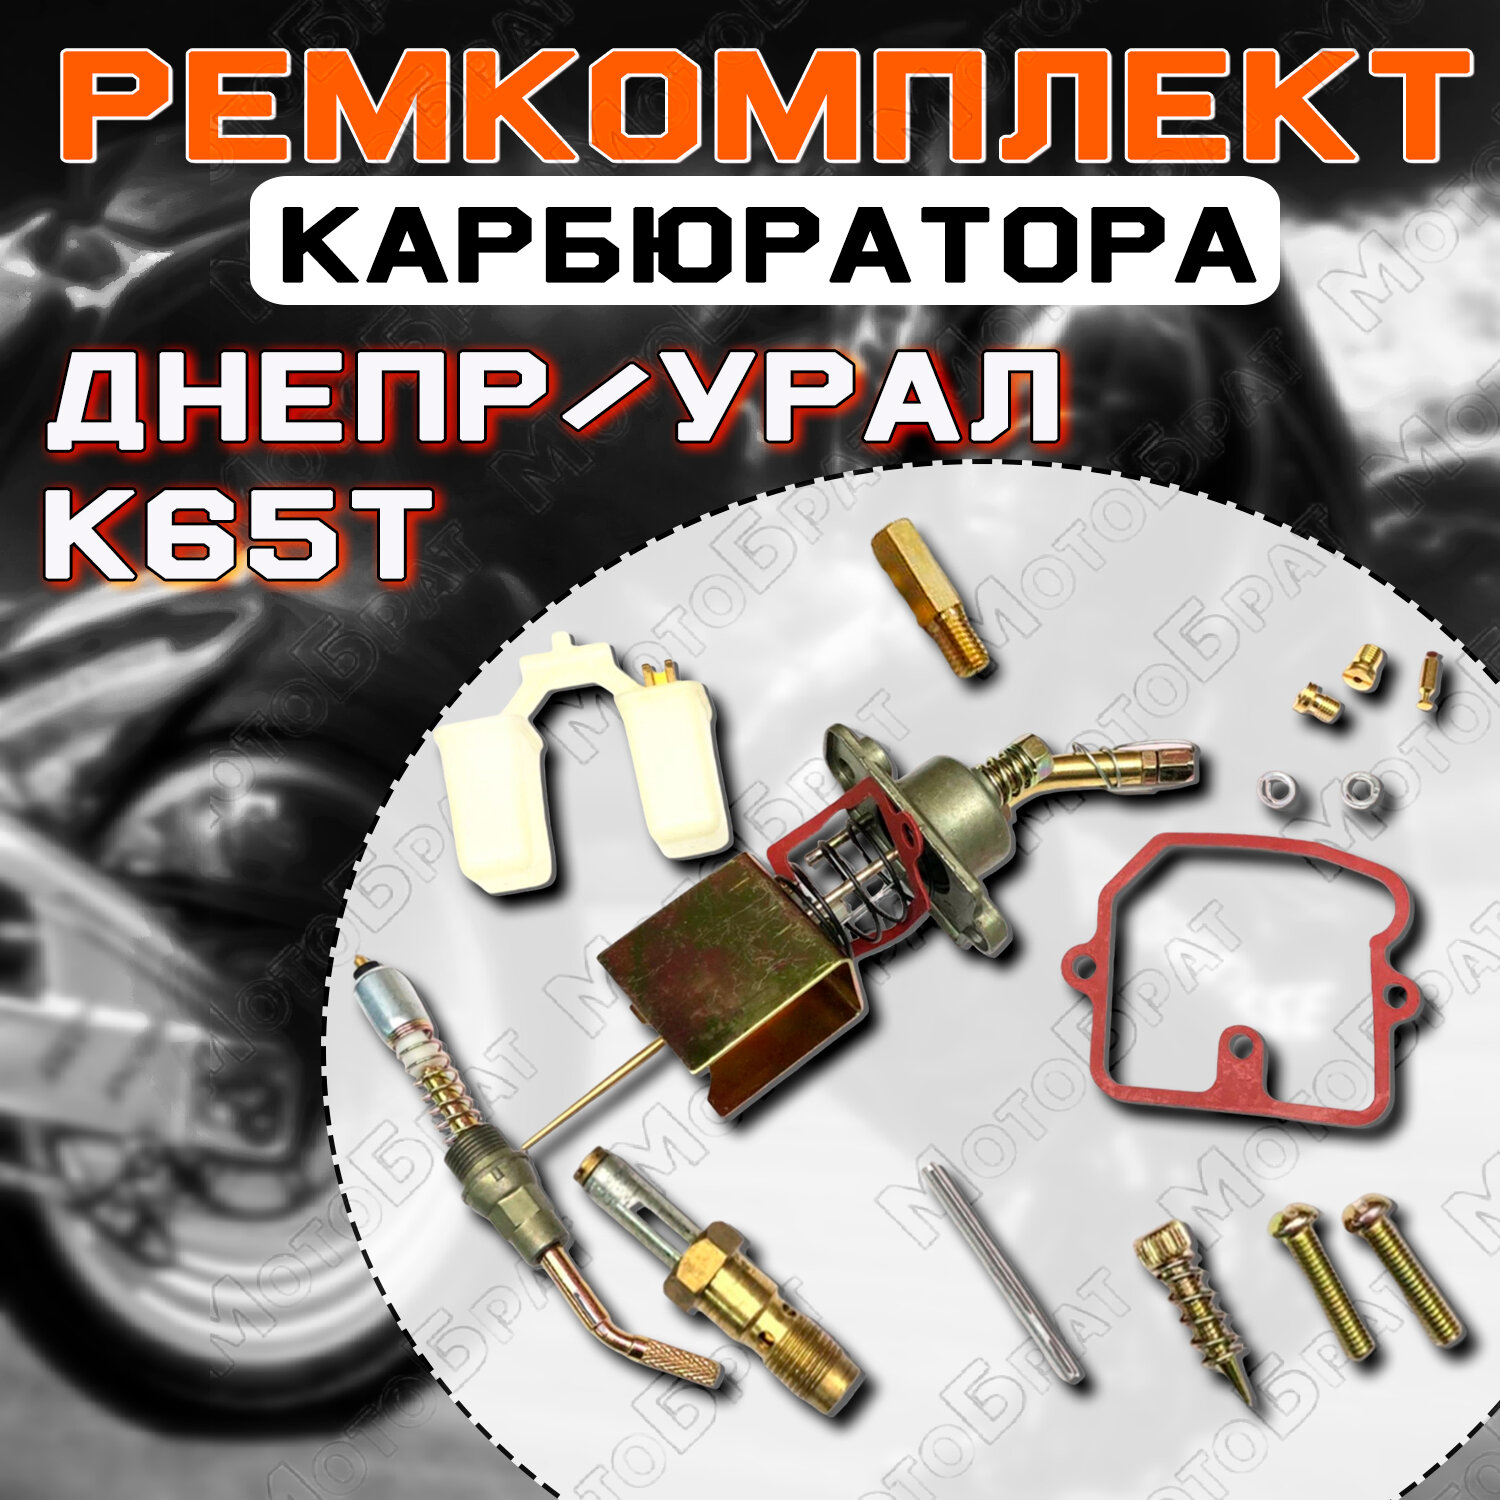 Ремкомплект карбюратора К65Т для мотоциклов типа Днепр Урал (полный)